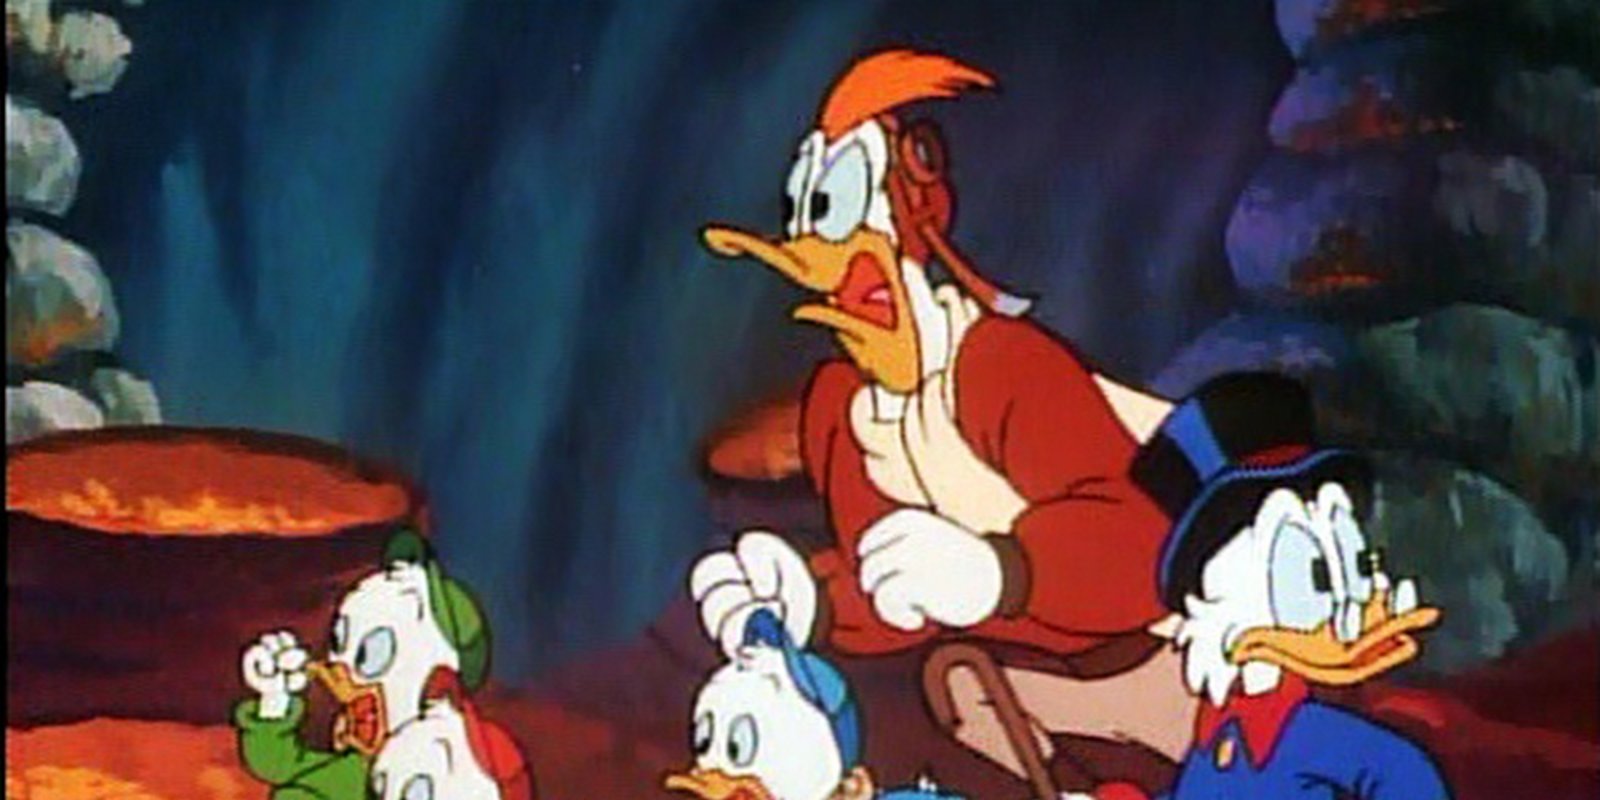 DuckTales - Die Serie